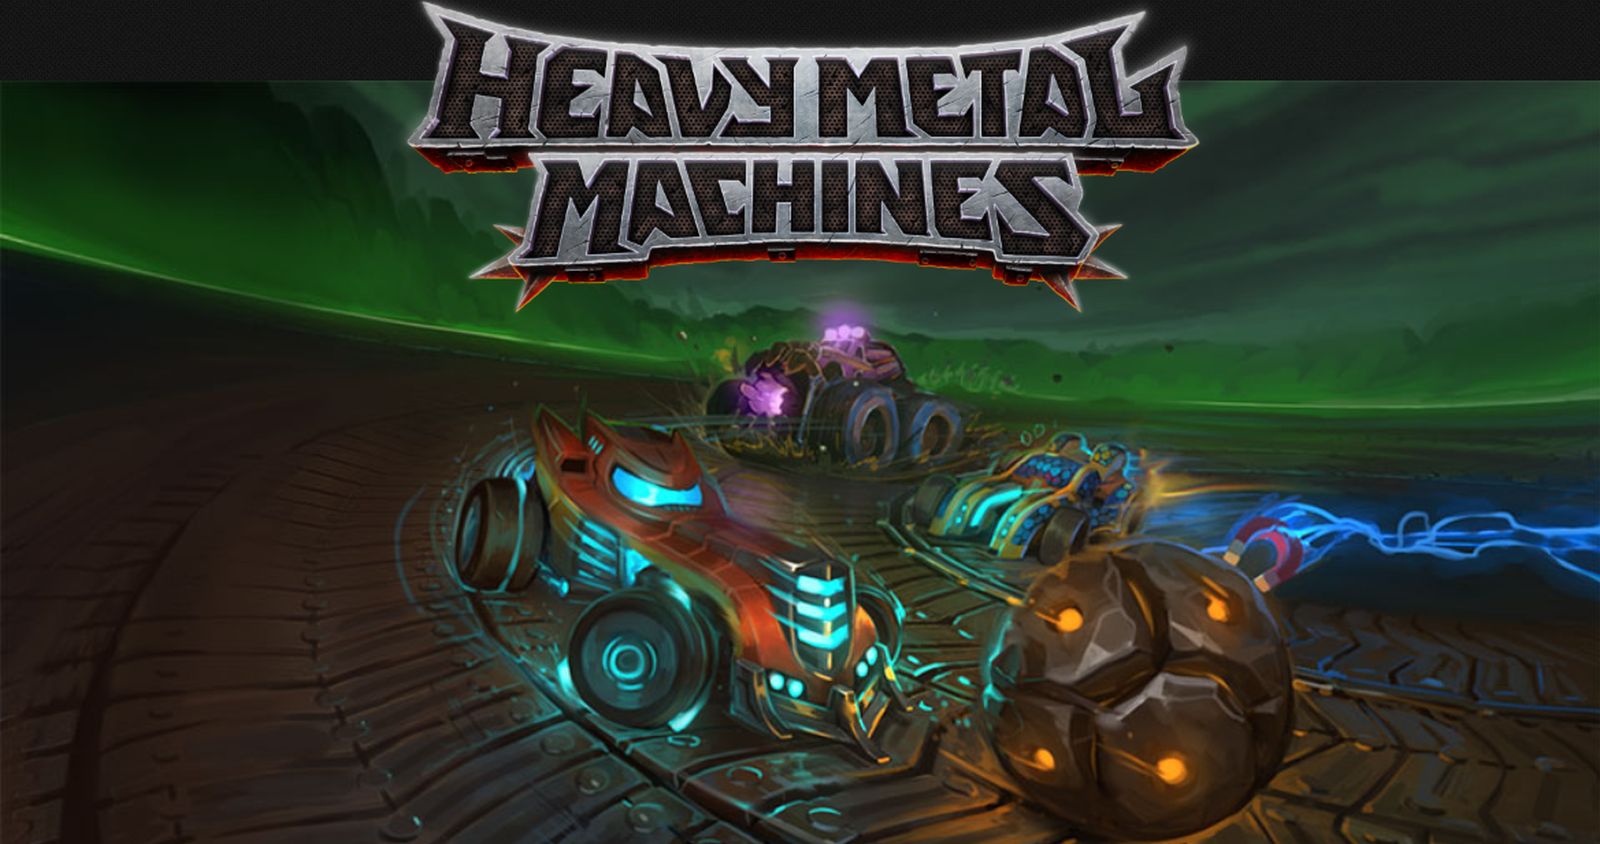 heavy metal machines audio